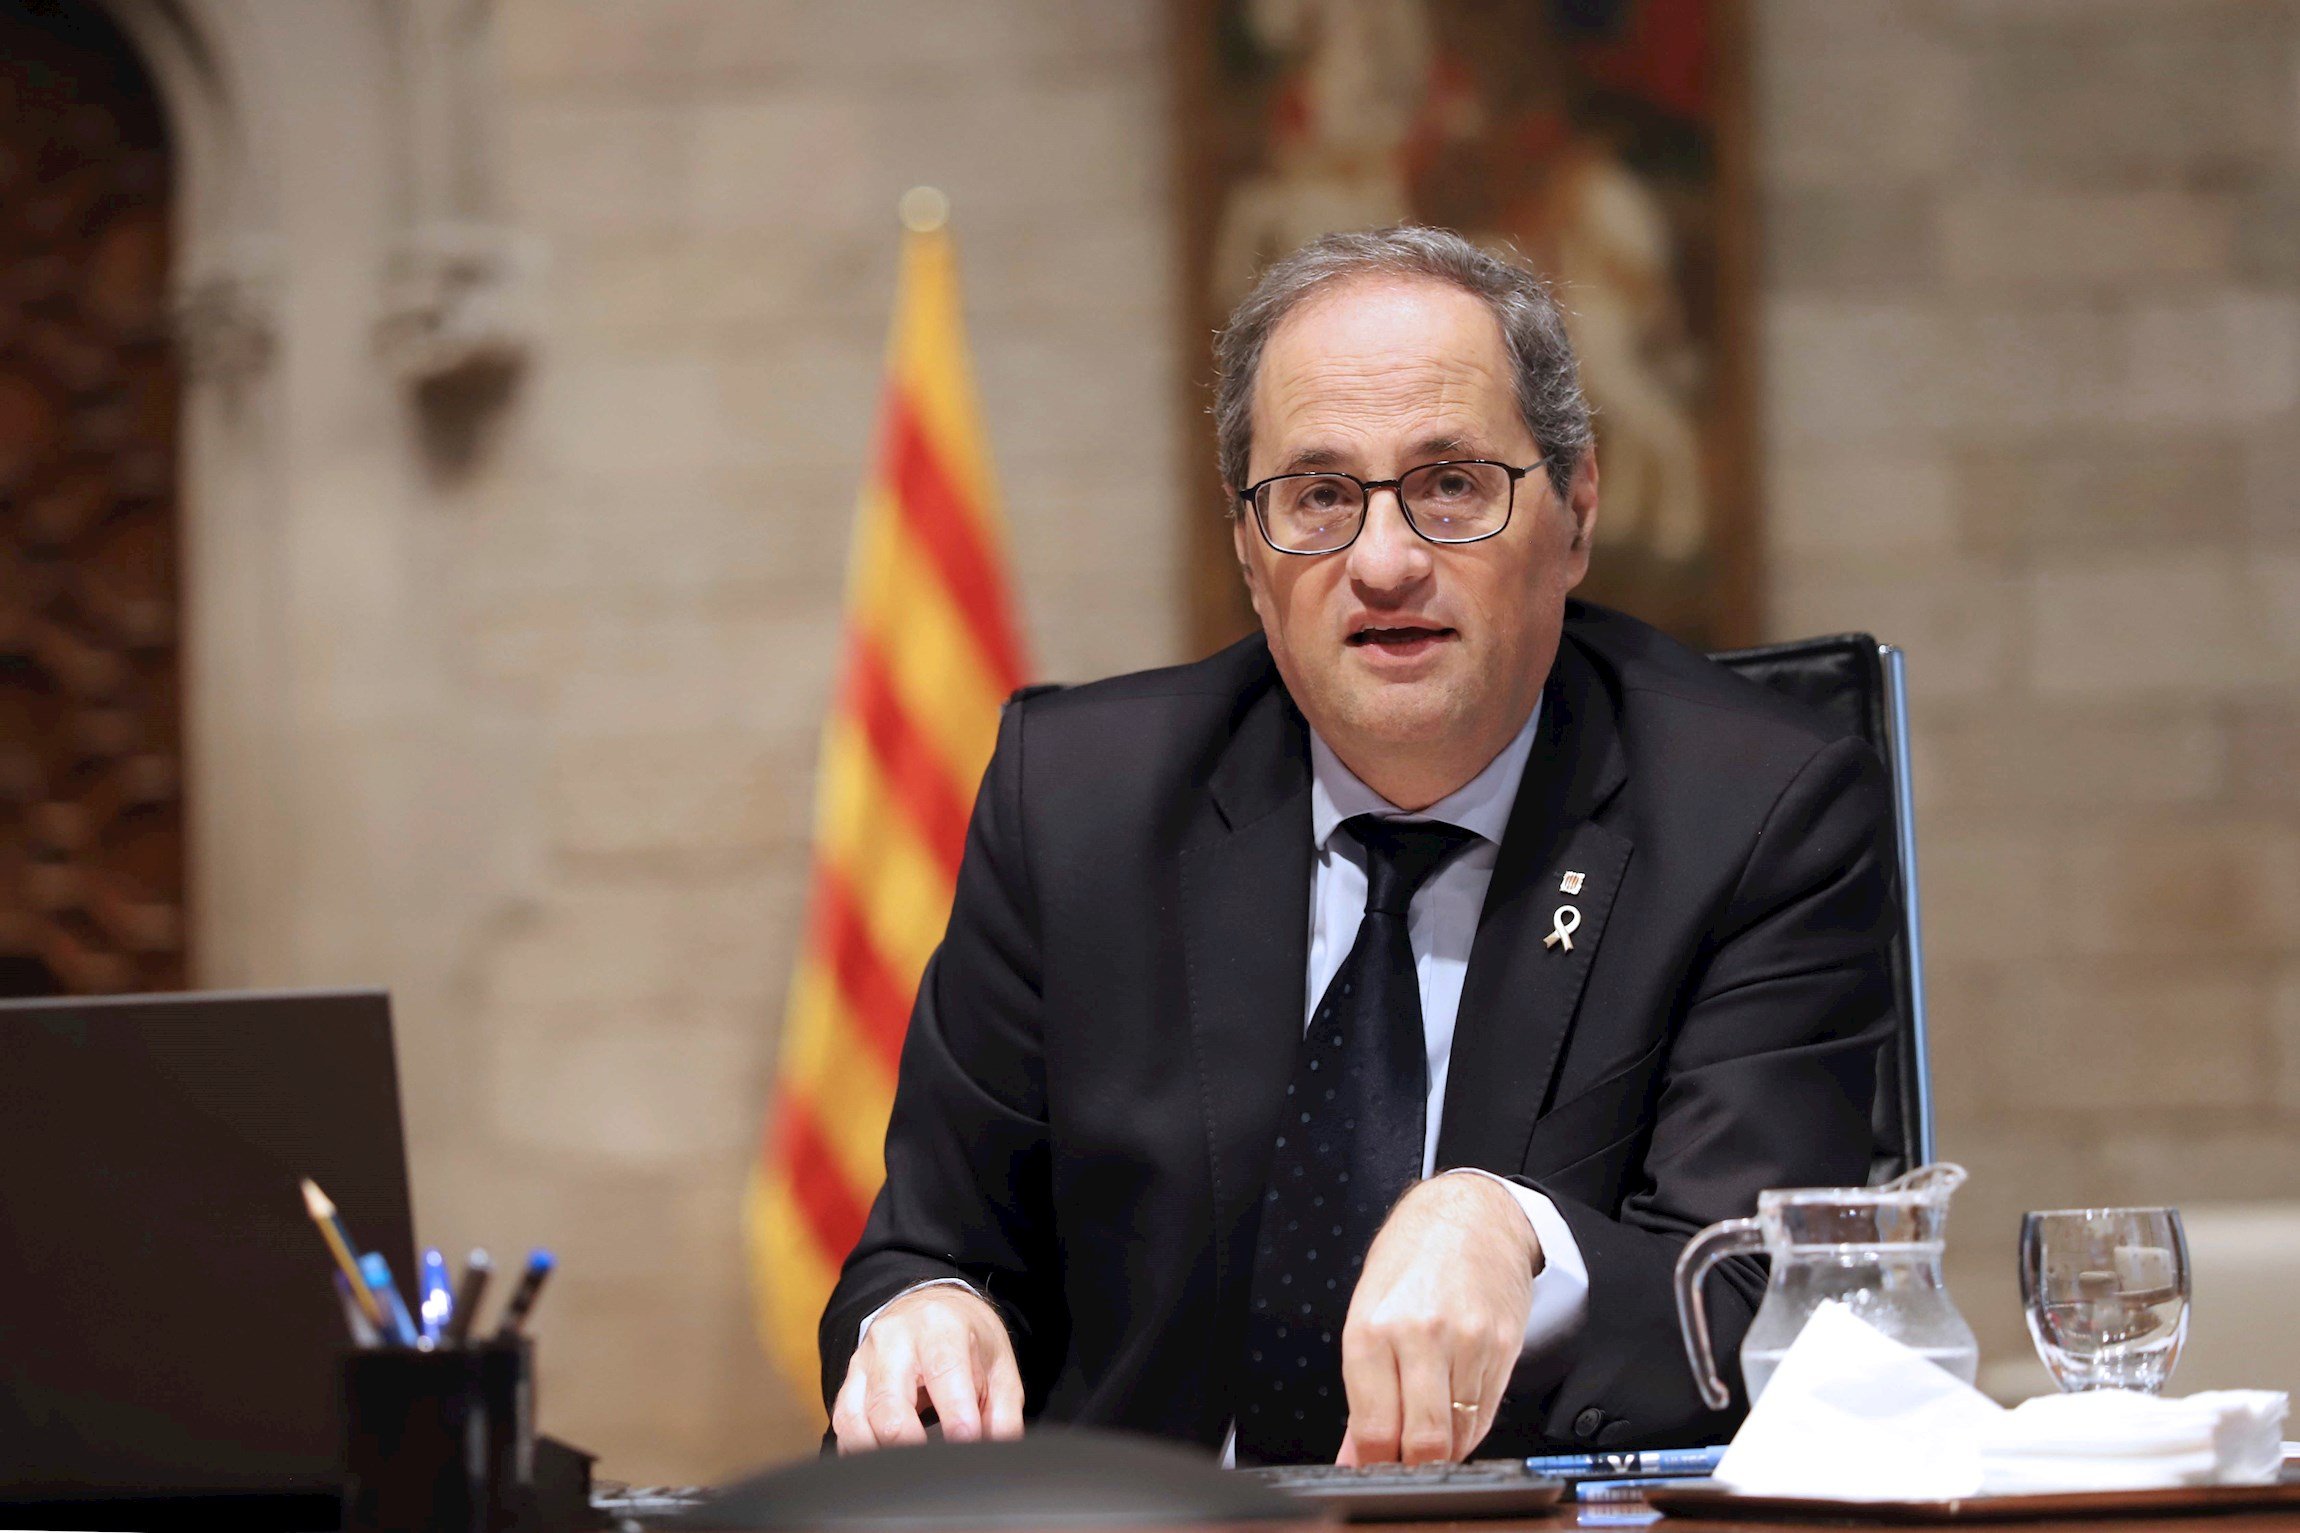 Alcaldes del PSC piden a Torra que avale la movilidad de Barcelona y las áreas